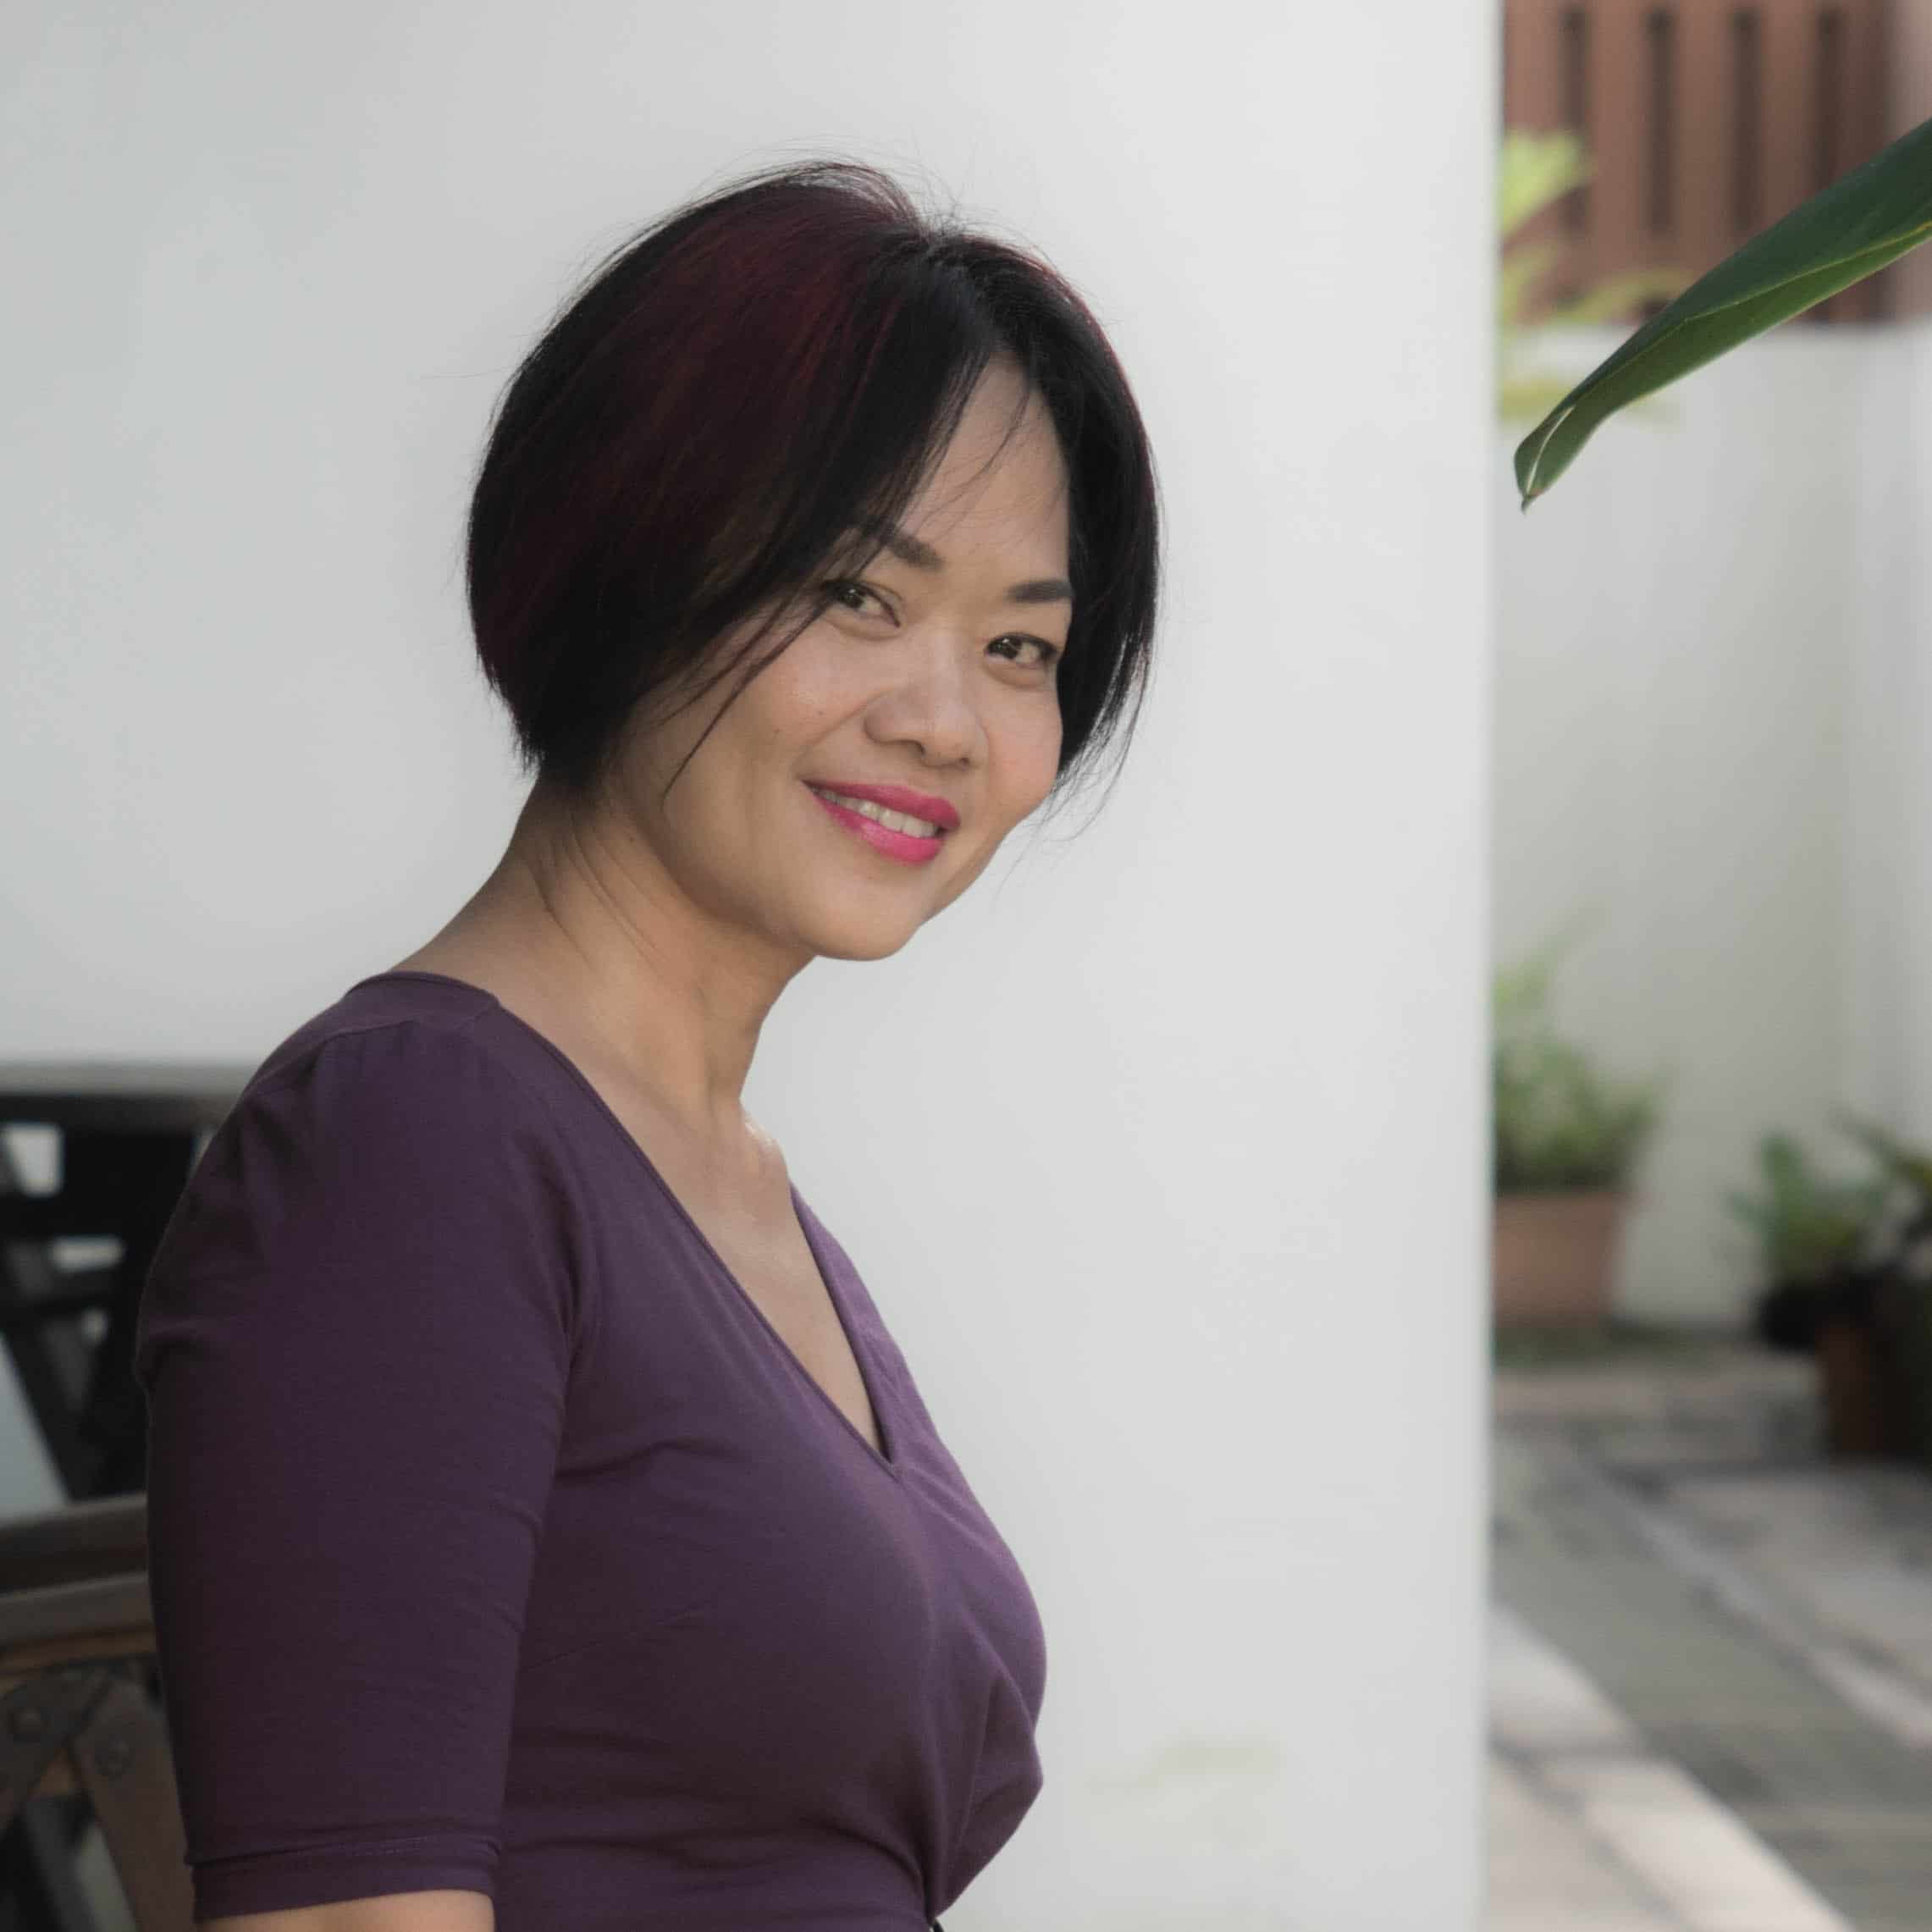 [ 新加坡 ] 為自閉兒移民澳洲 女企業家教出碩士生